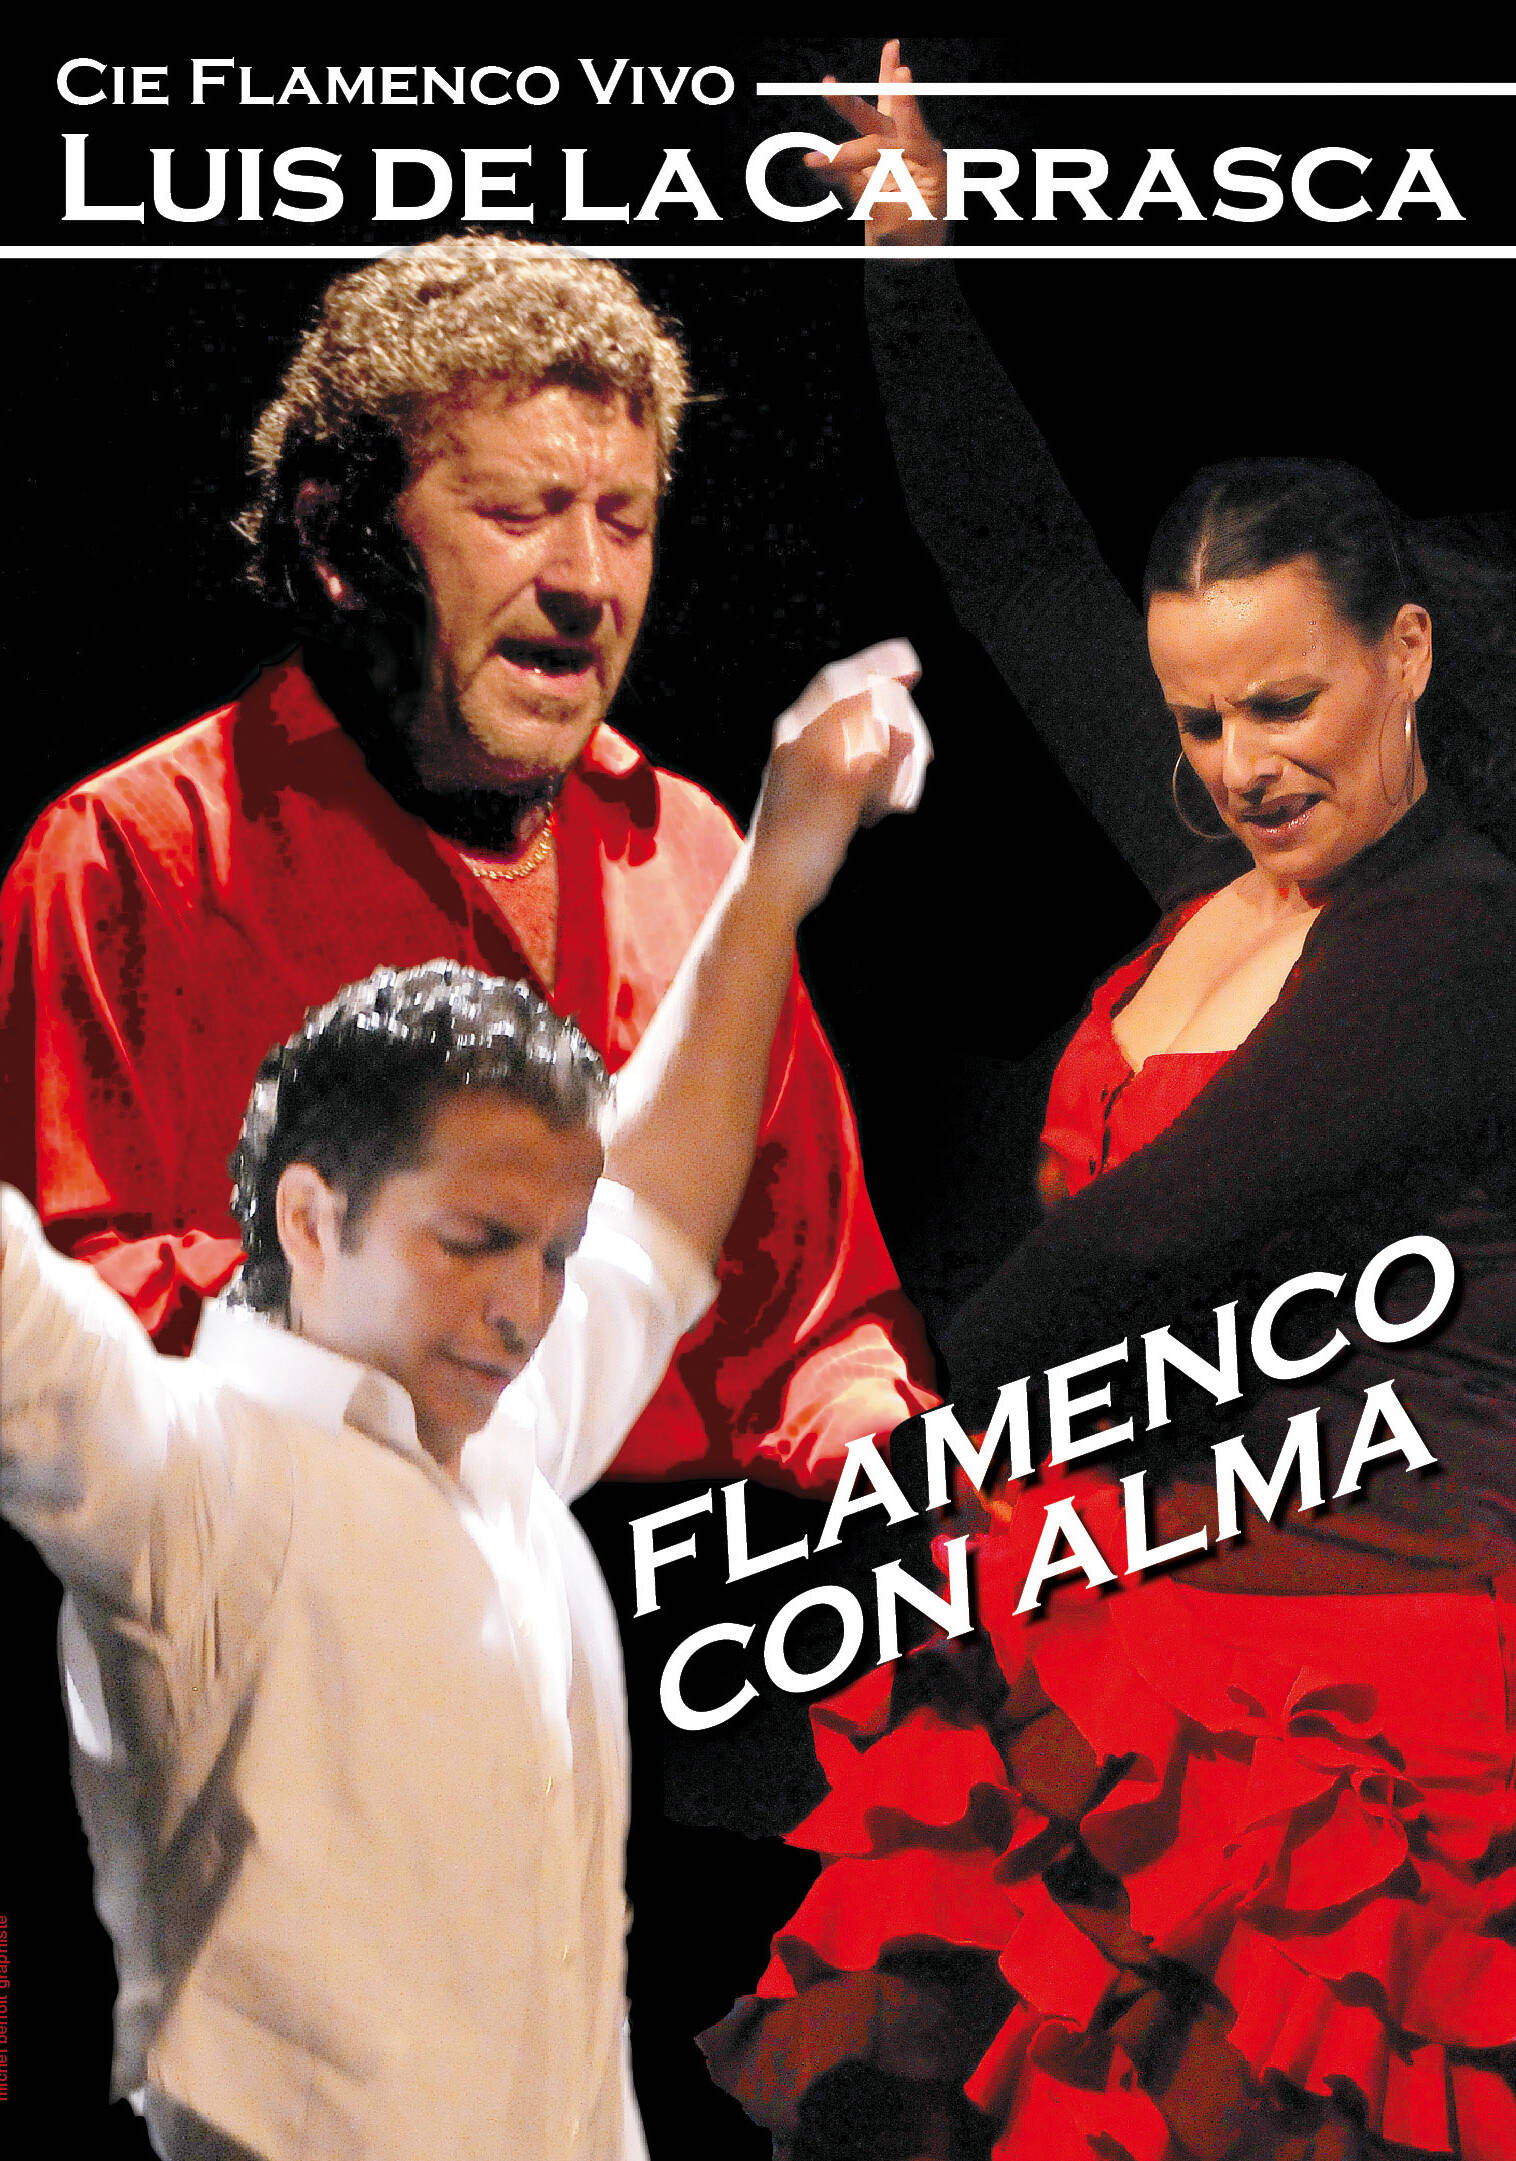 Luis de la Carrasca - Flamenco con Alma